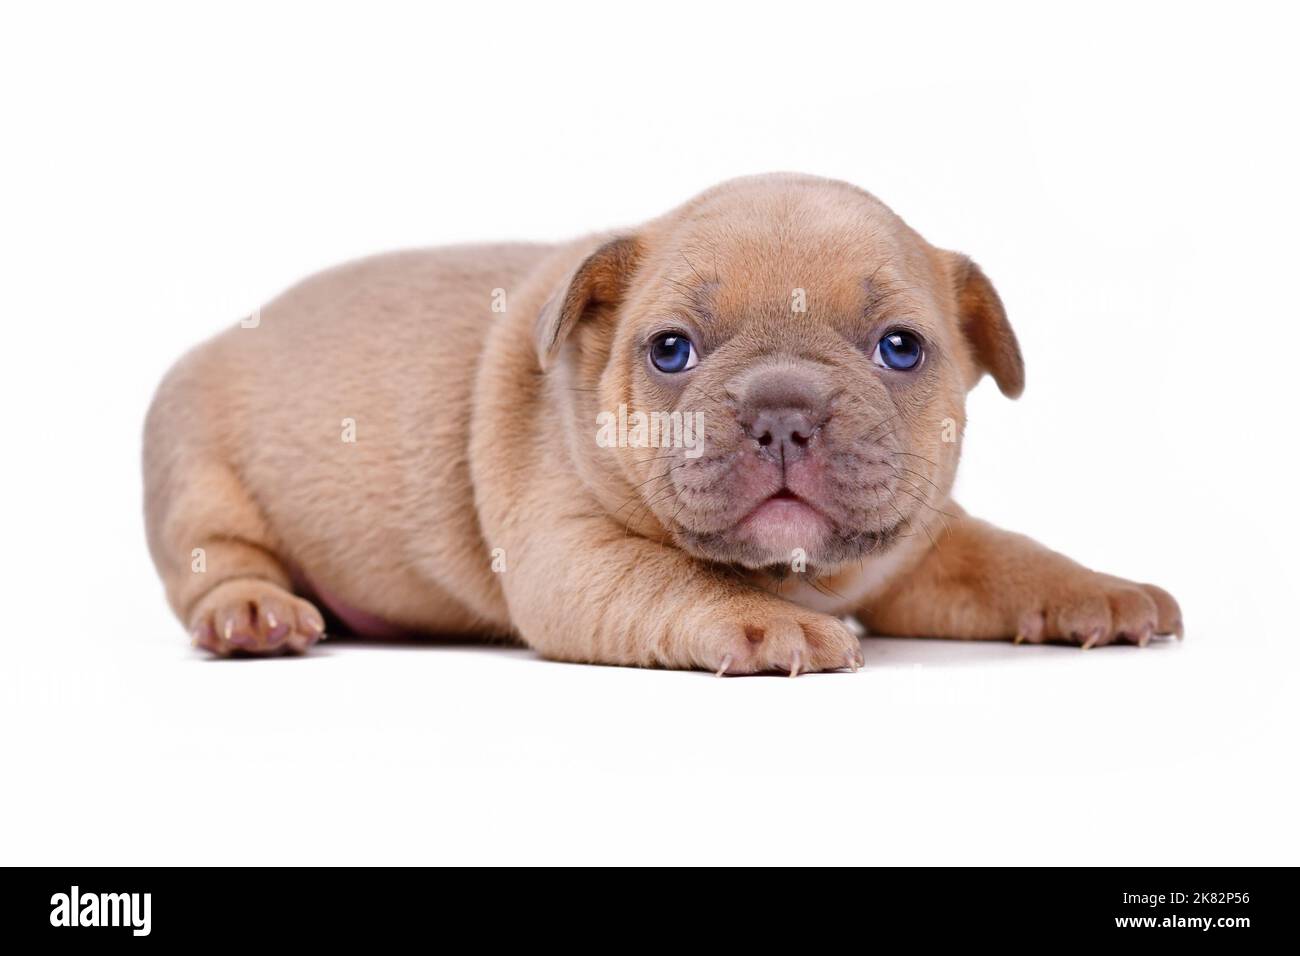 Mignon crème lilas fauve couleur 3 semaines chien Bulldog français chiot avec les yeux bleus sur fond blanc Banque D'Images